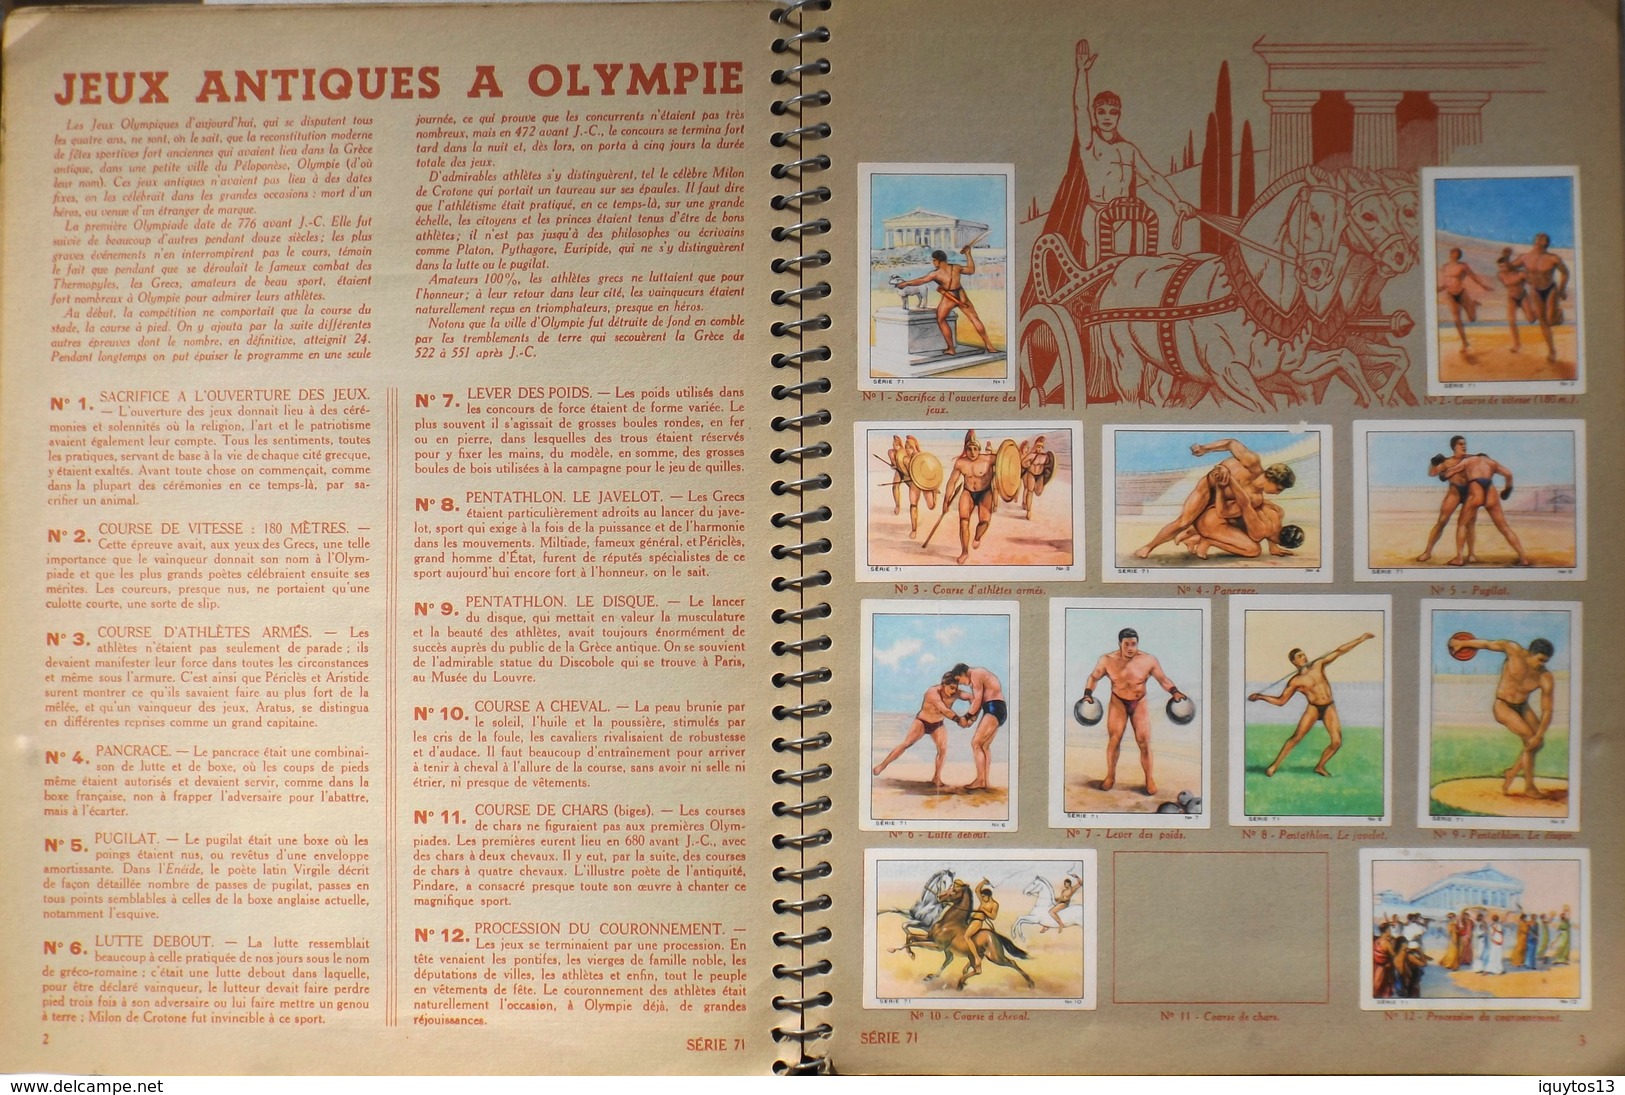 ALBUM NESTLE 1938 - 1939 Pratiquement Complet Il Manque Quelques Images - En Bon Etat D'Usage - Albumes & Catálogos